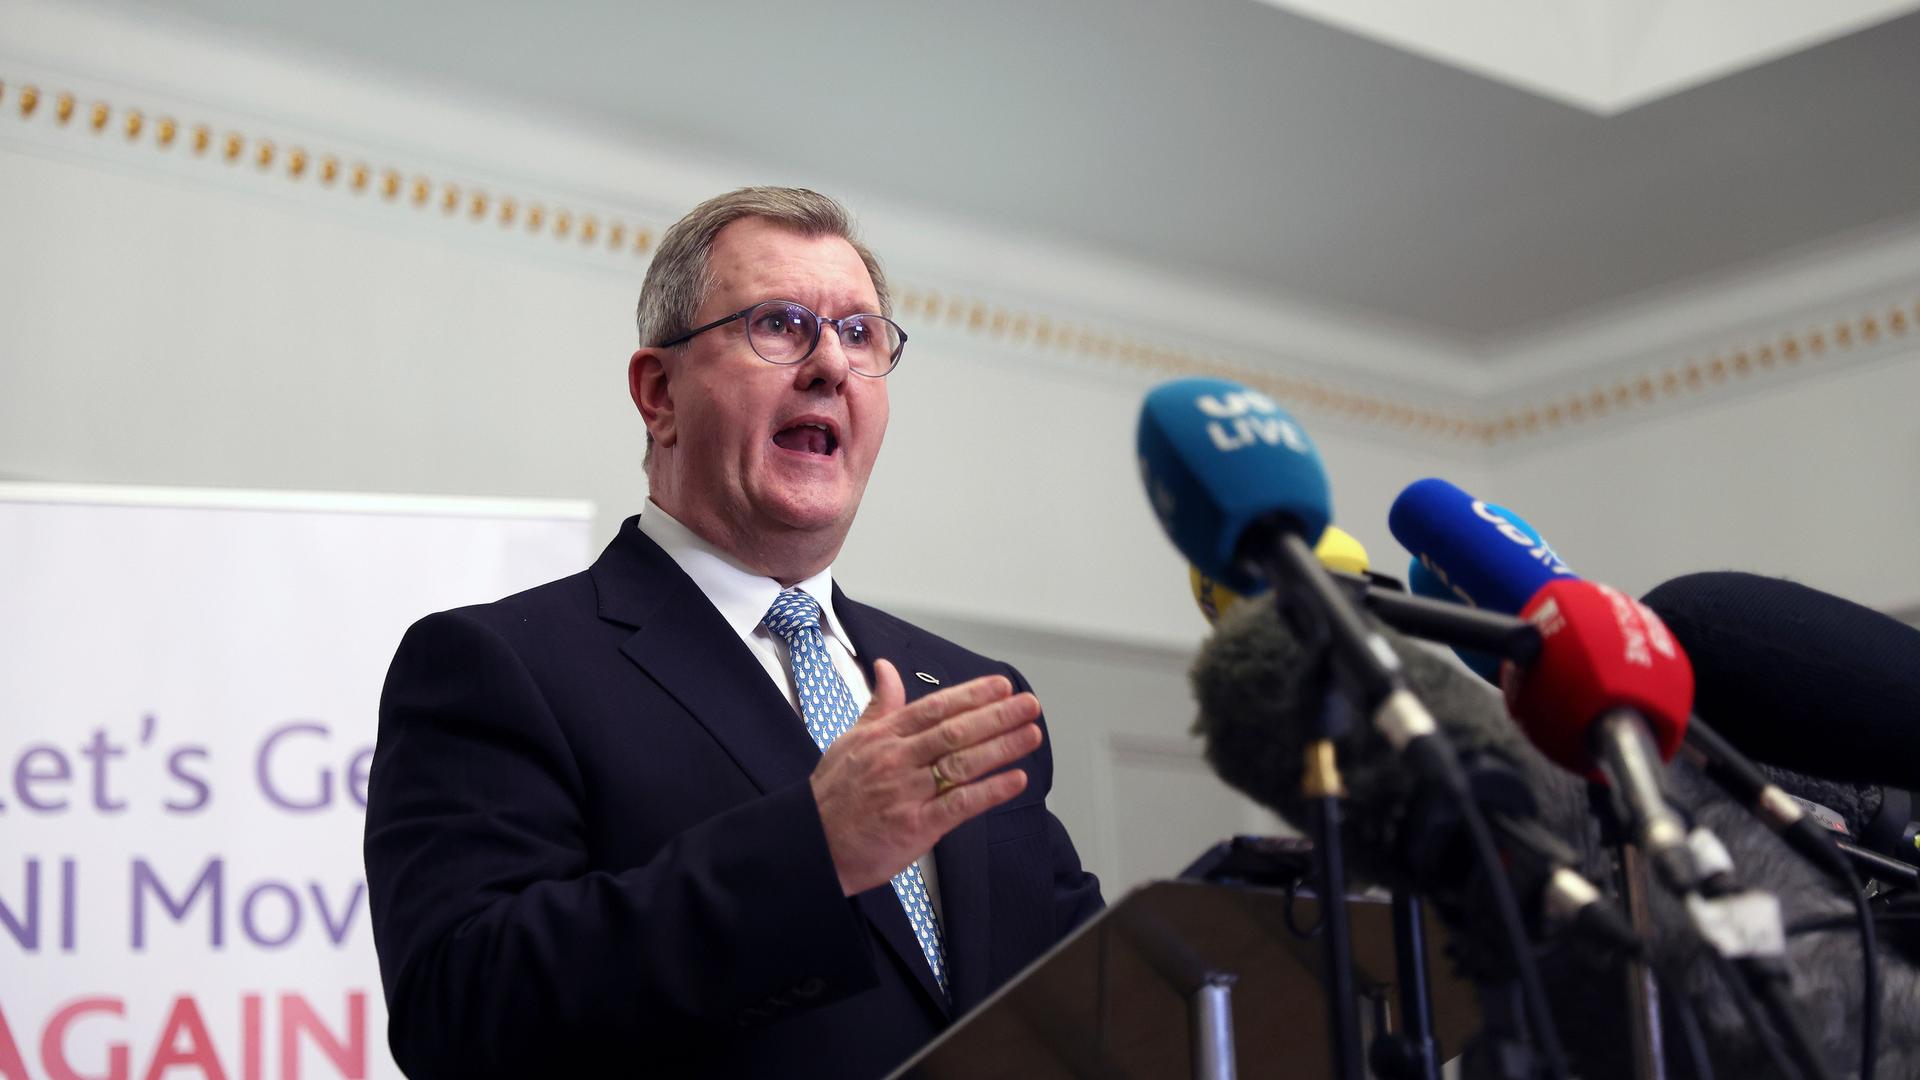 Das Bild zeigt Jeffrey Donaldson, der als Vorsitzender der nordirischen Democratic Unionist Party DUP zurückgetreten ist.